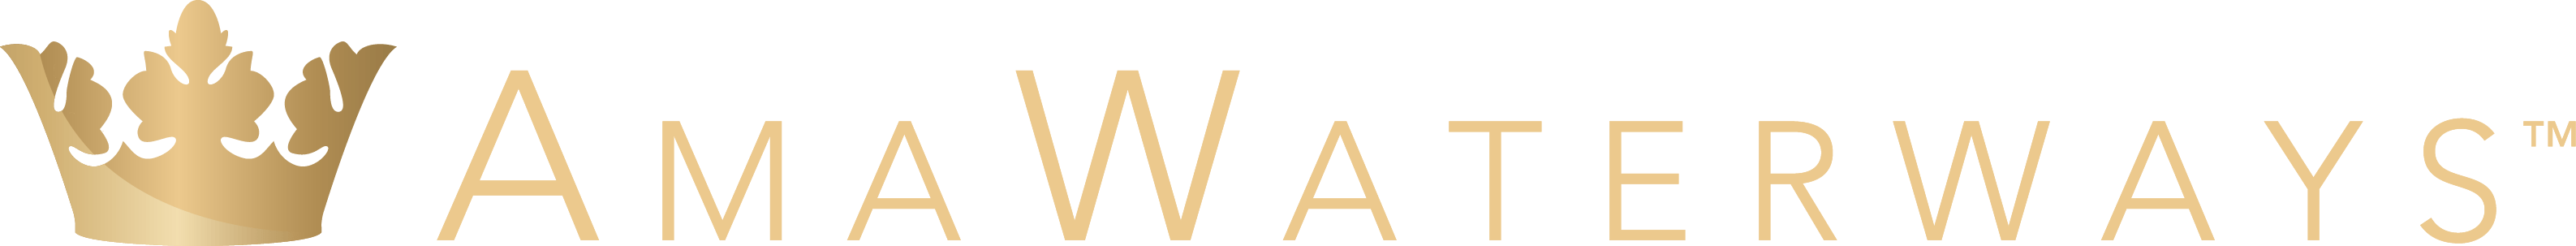 AmaWaterways Logo png